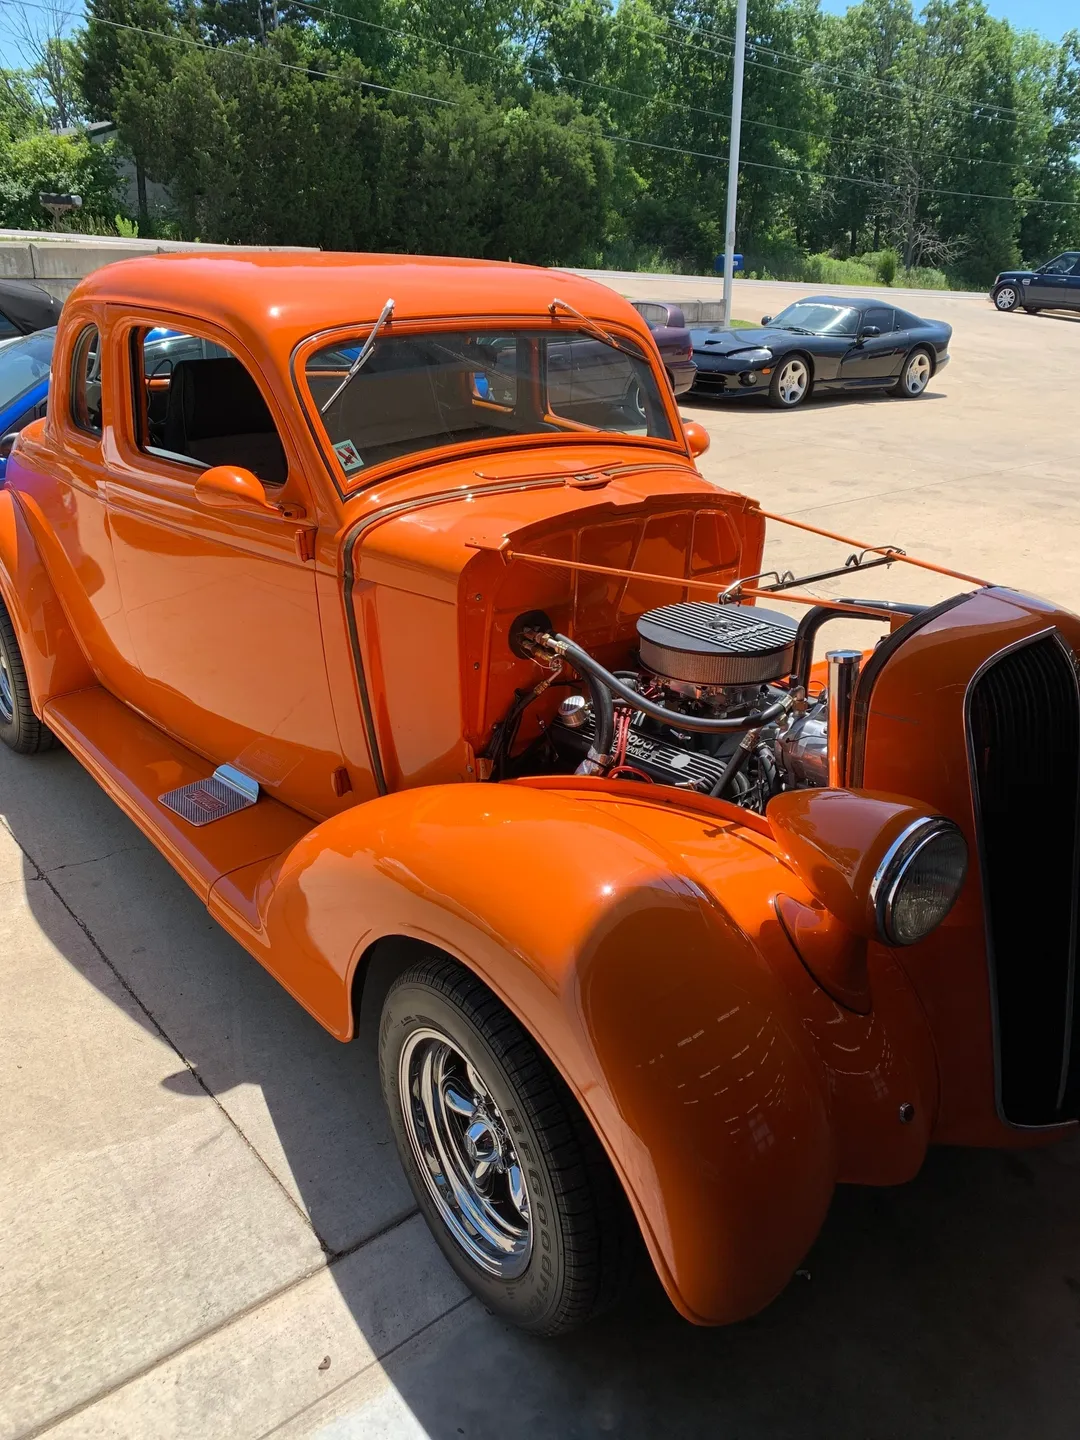 An orange vintage car parked outside